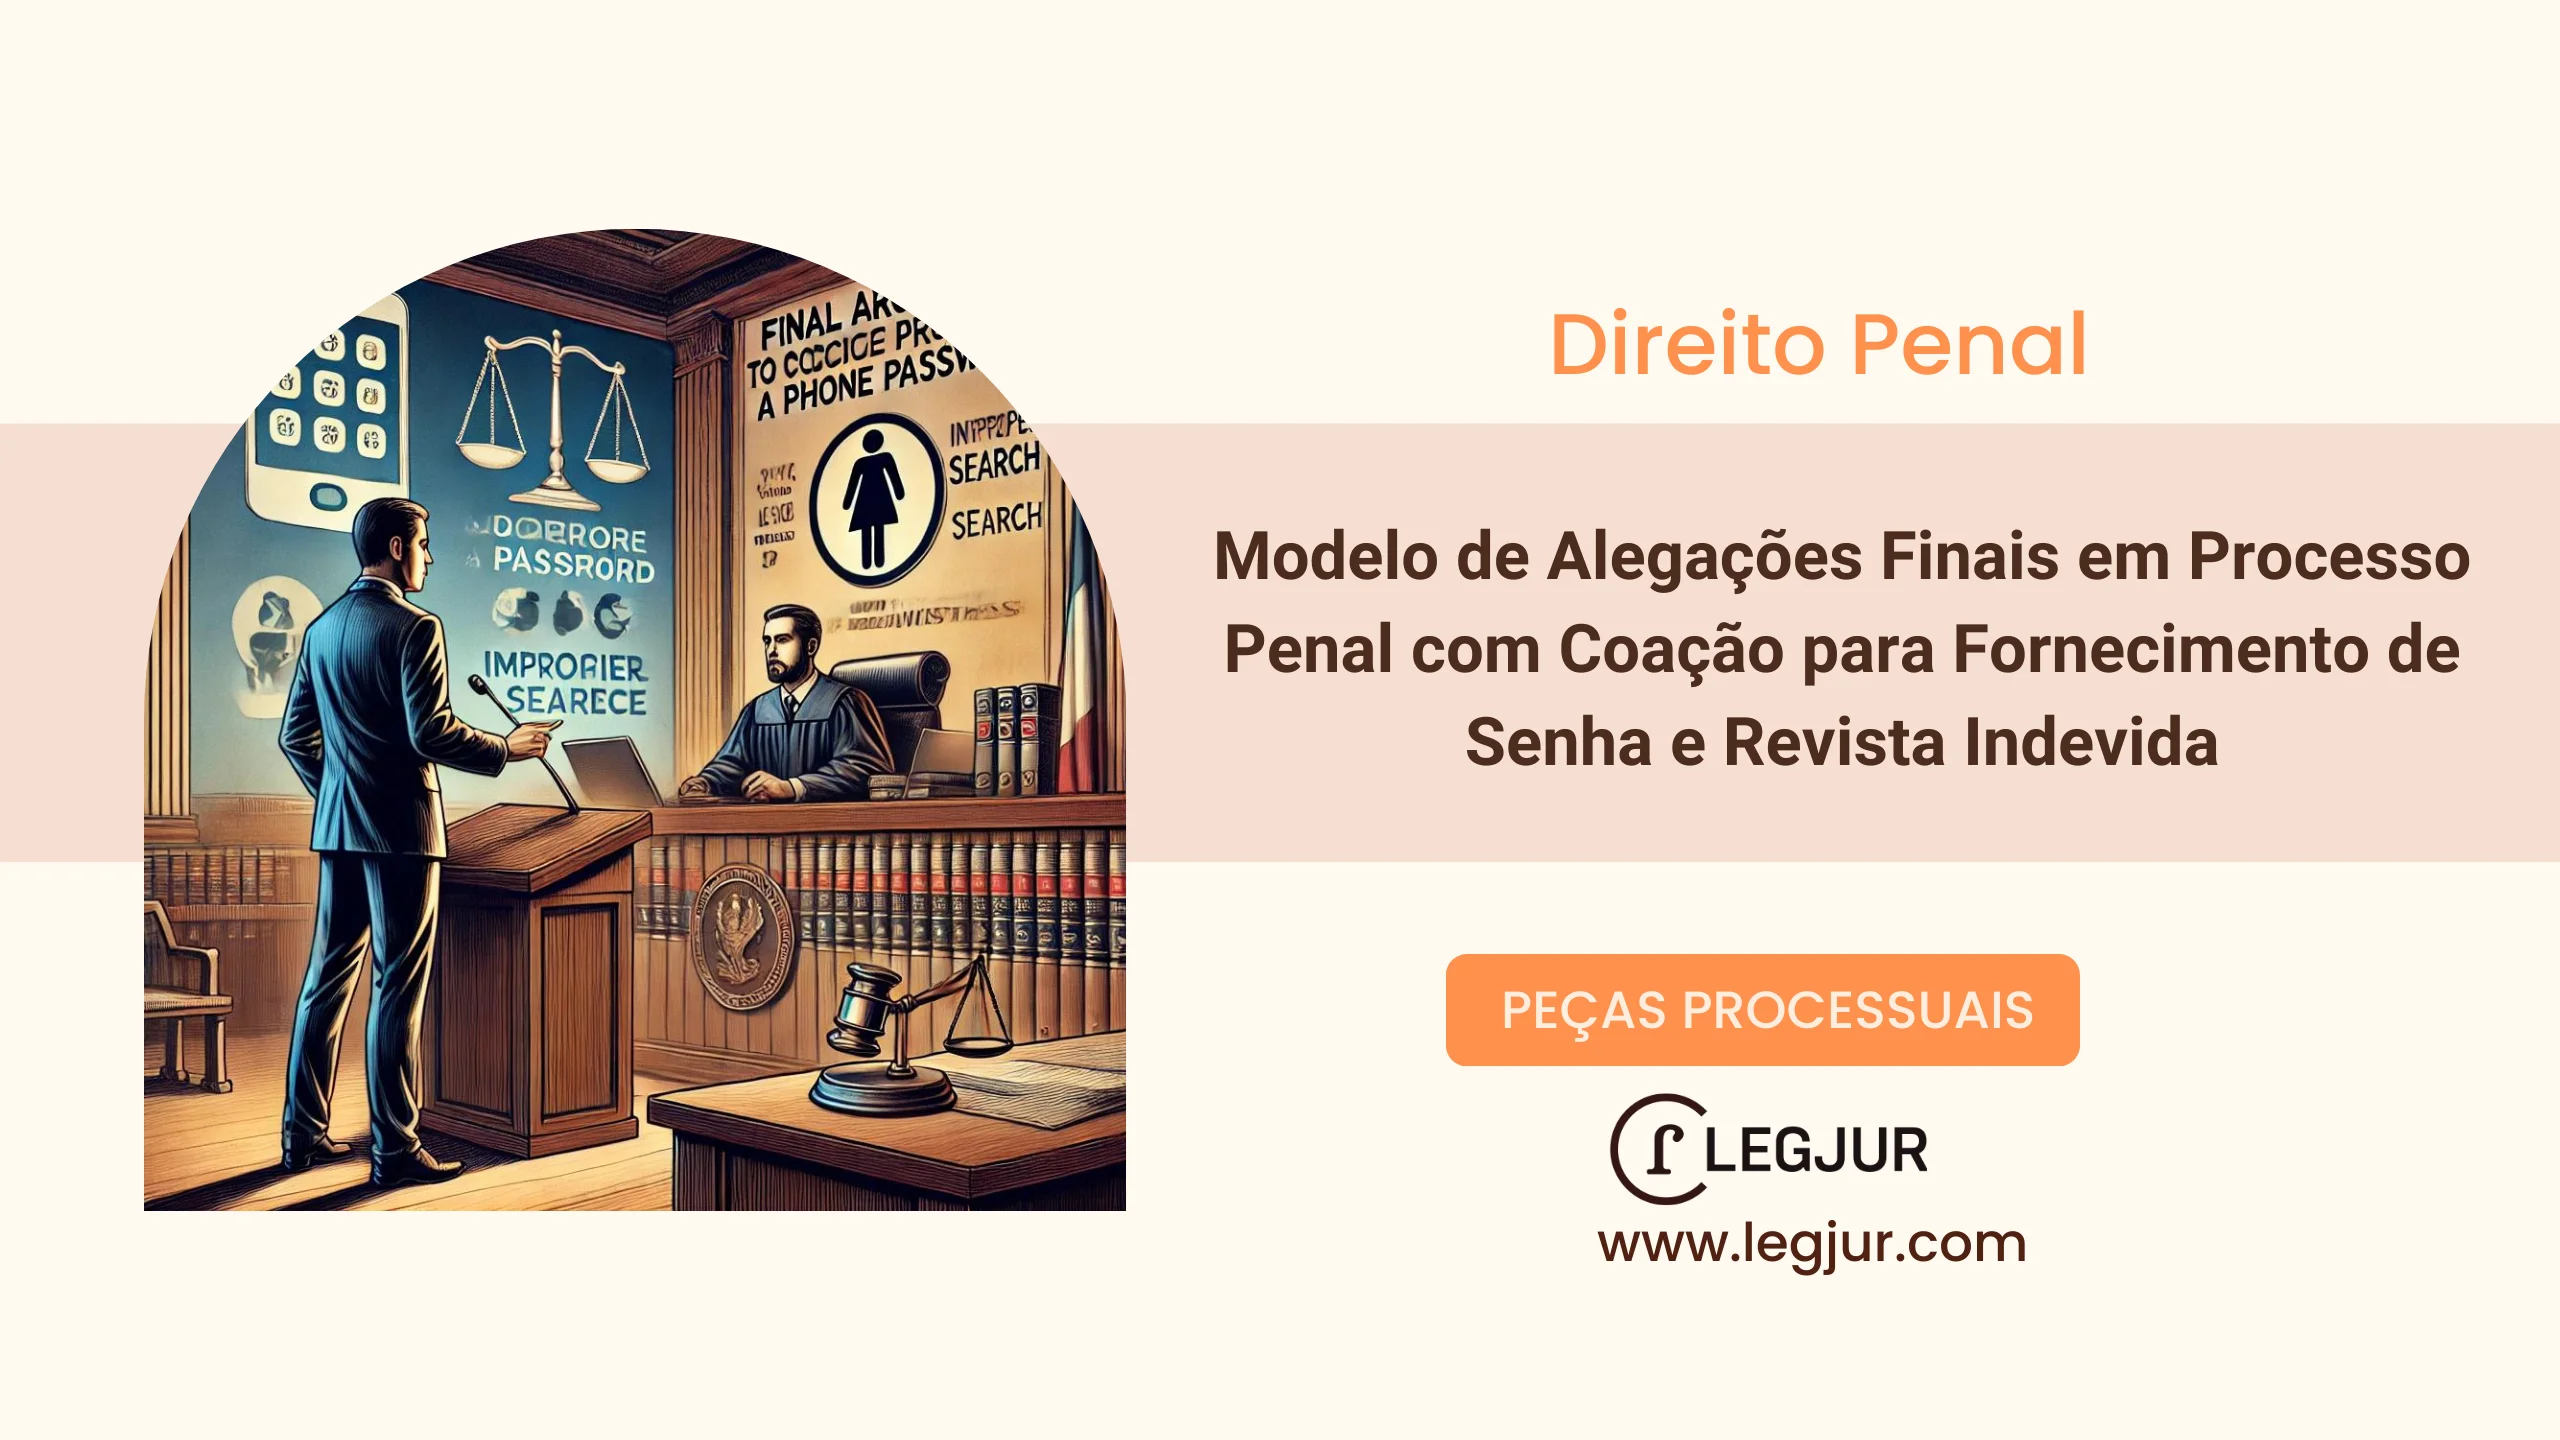 Modelo de Alegações Finais em Processo Penal com Coação para Fornecimento de Senha e Revista Indevida